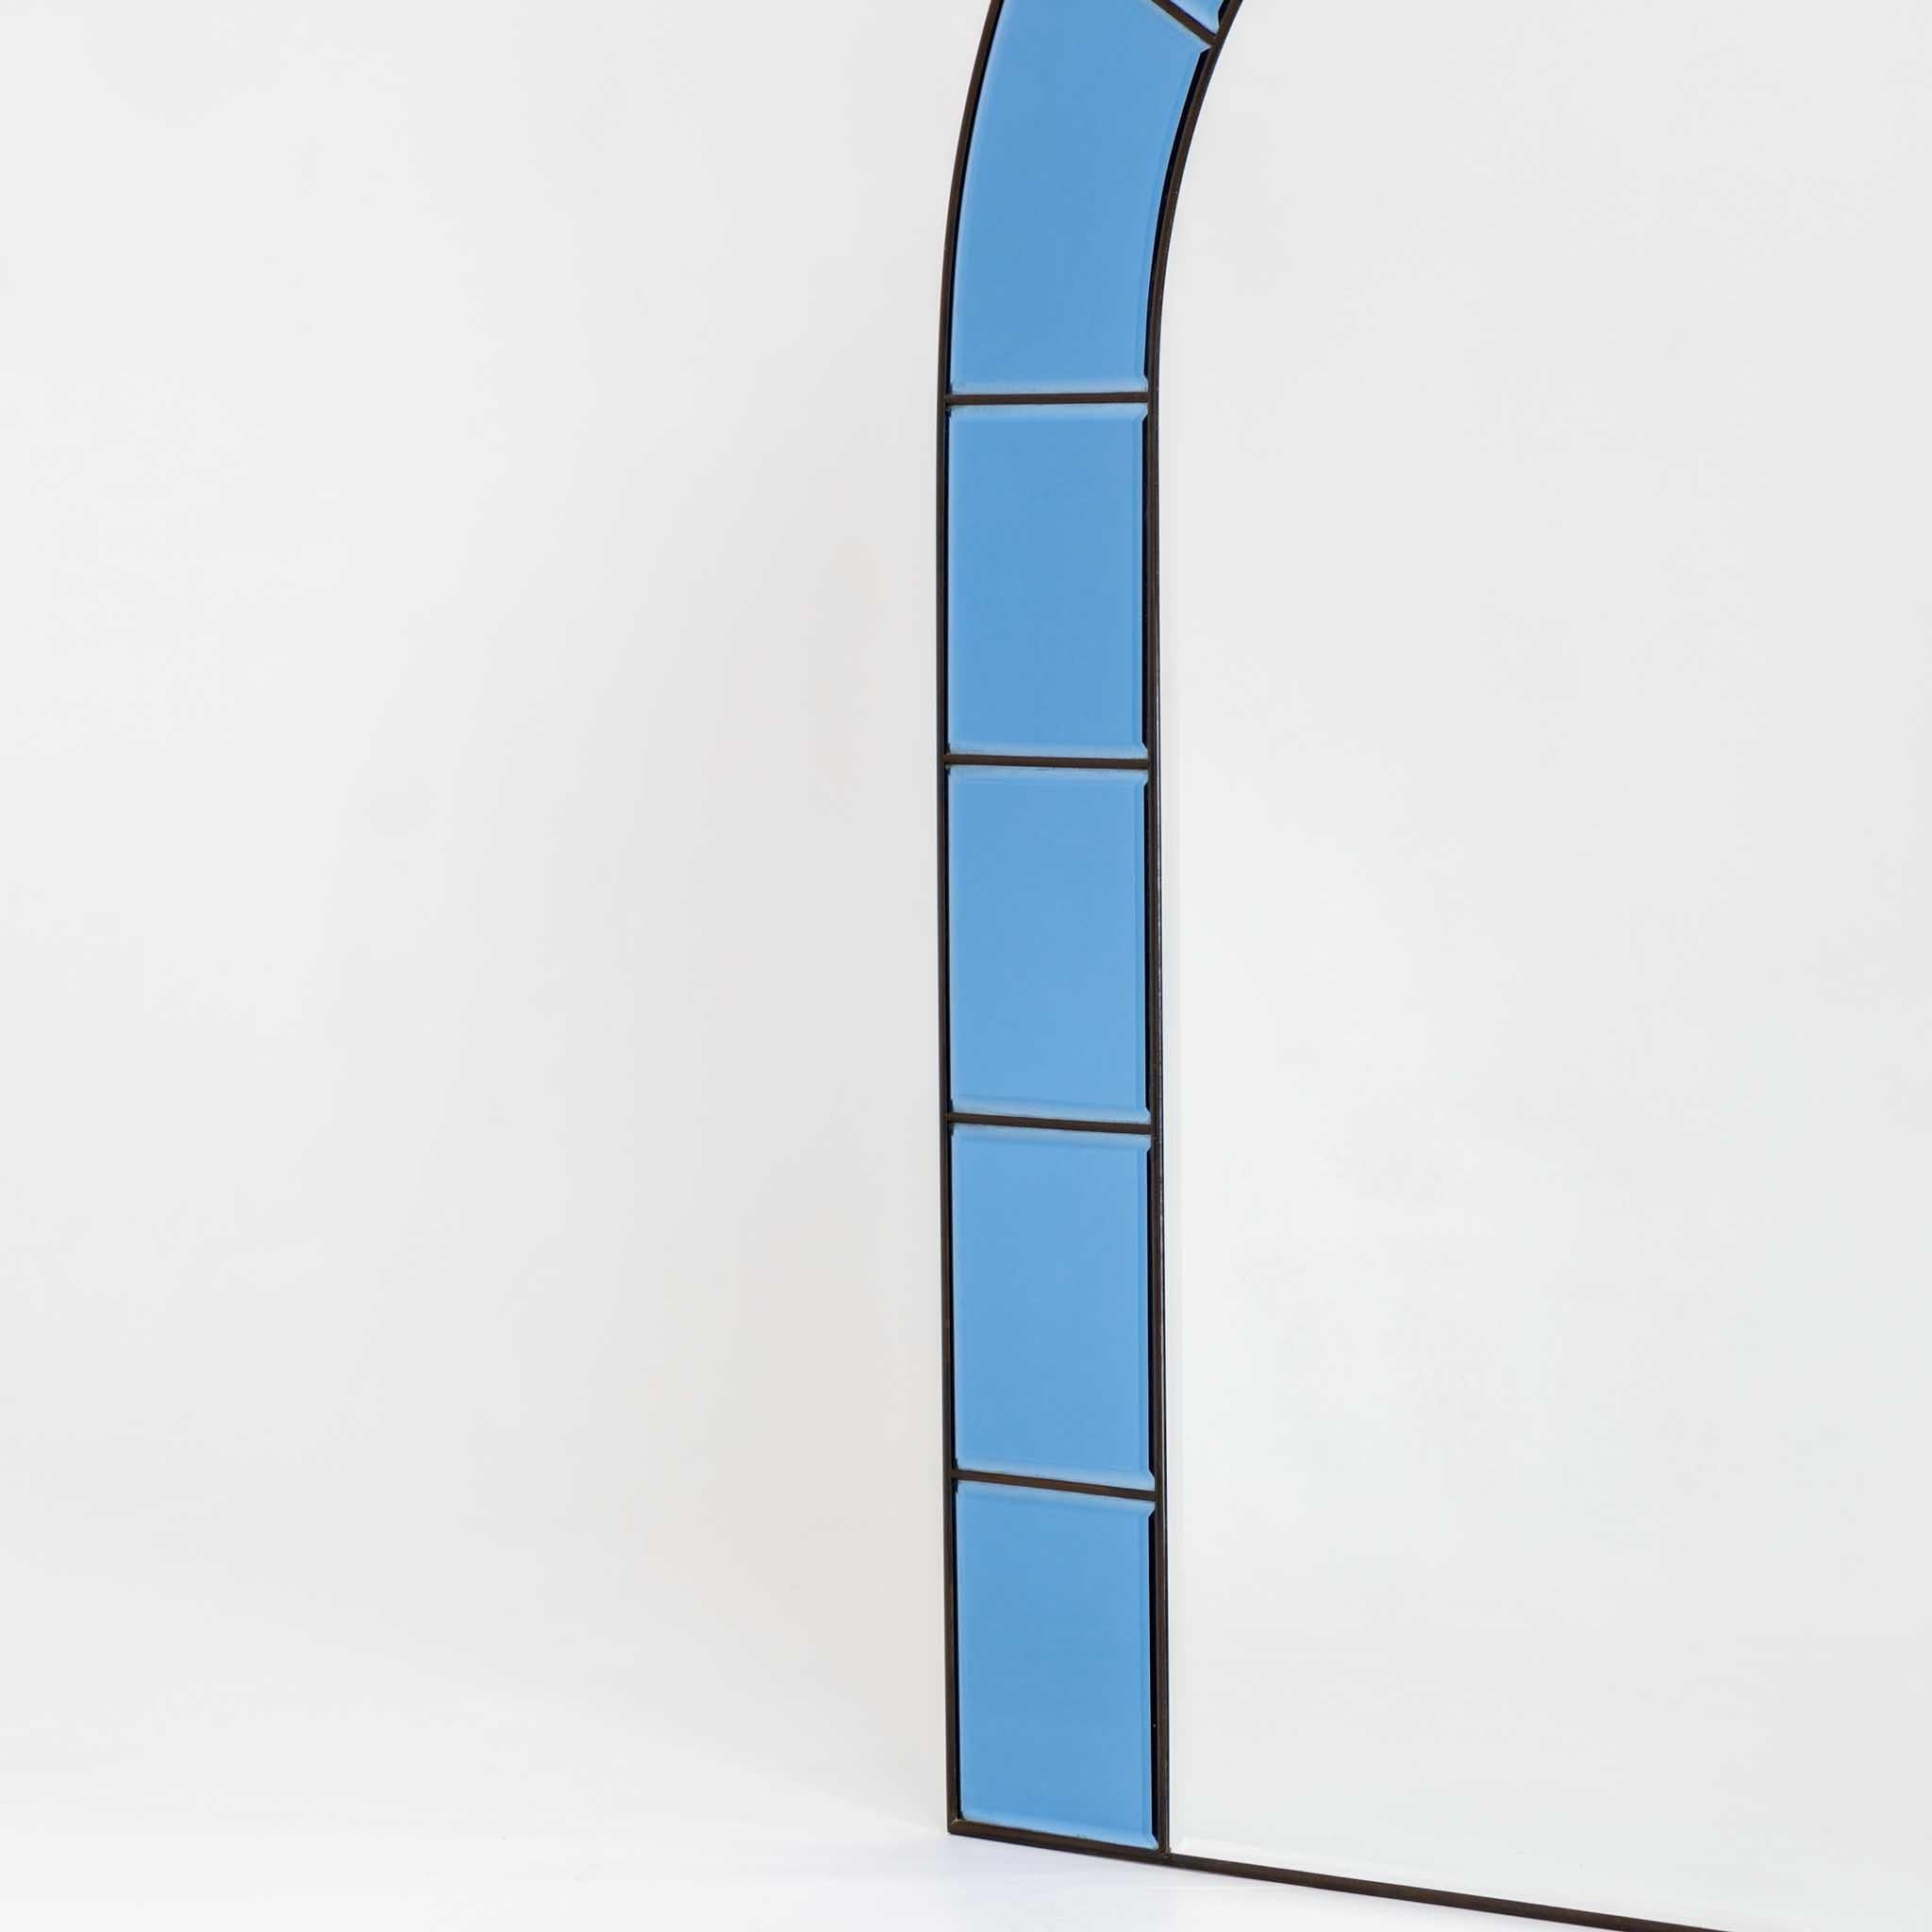 Großer bogenförmiger Wandspiegel mit schmalem Messingrahmen. Die Umrahmung besteht aus blauen Glasscheiben mit facettierten Kanten. Der Spiegel ist im Stil der italienischen Manufaktur Cristal Arte gestaltet.